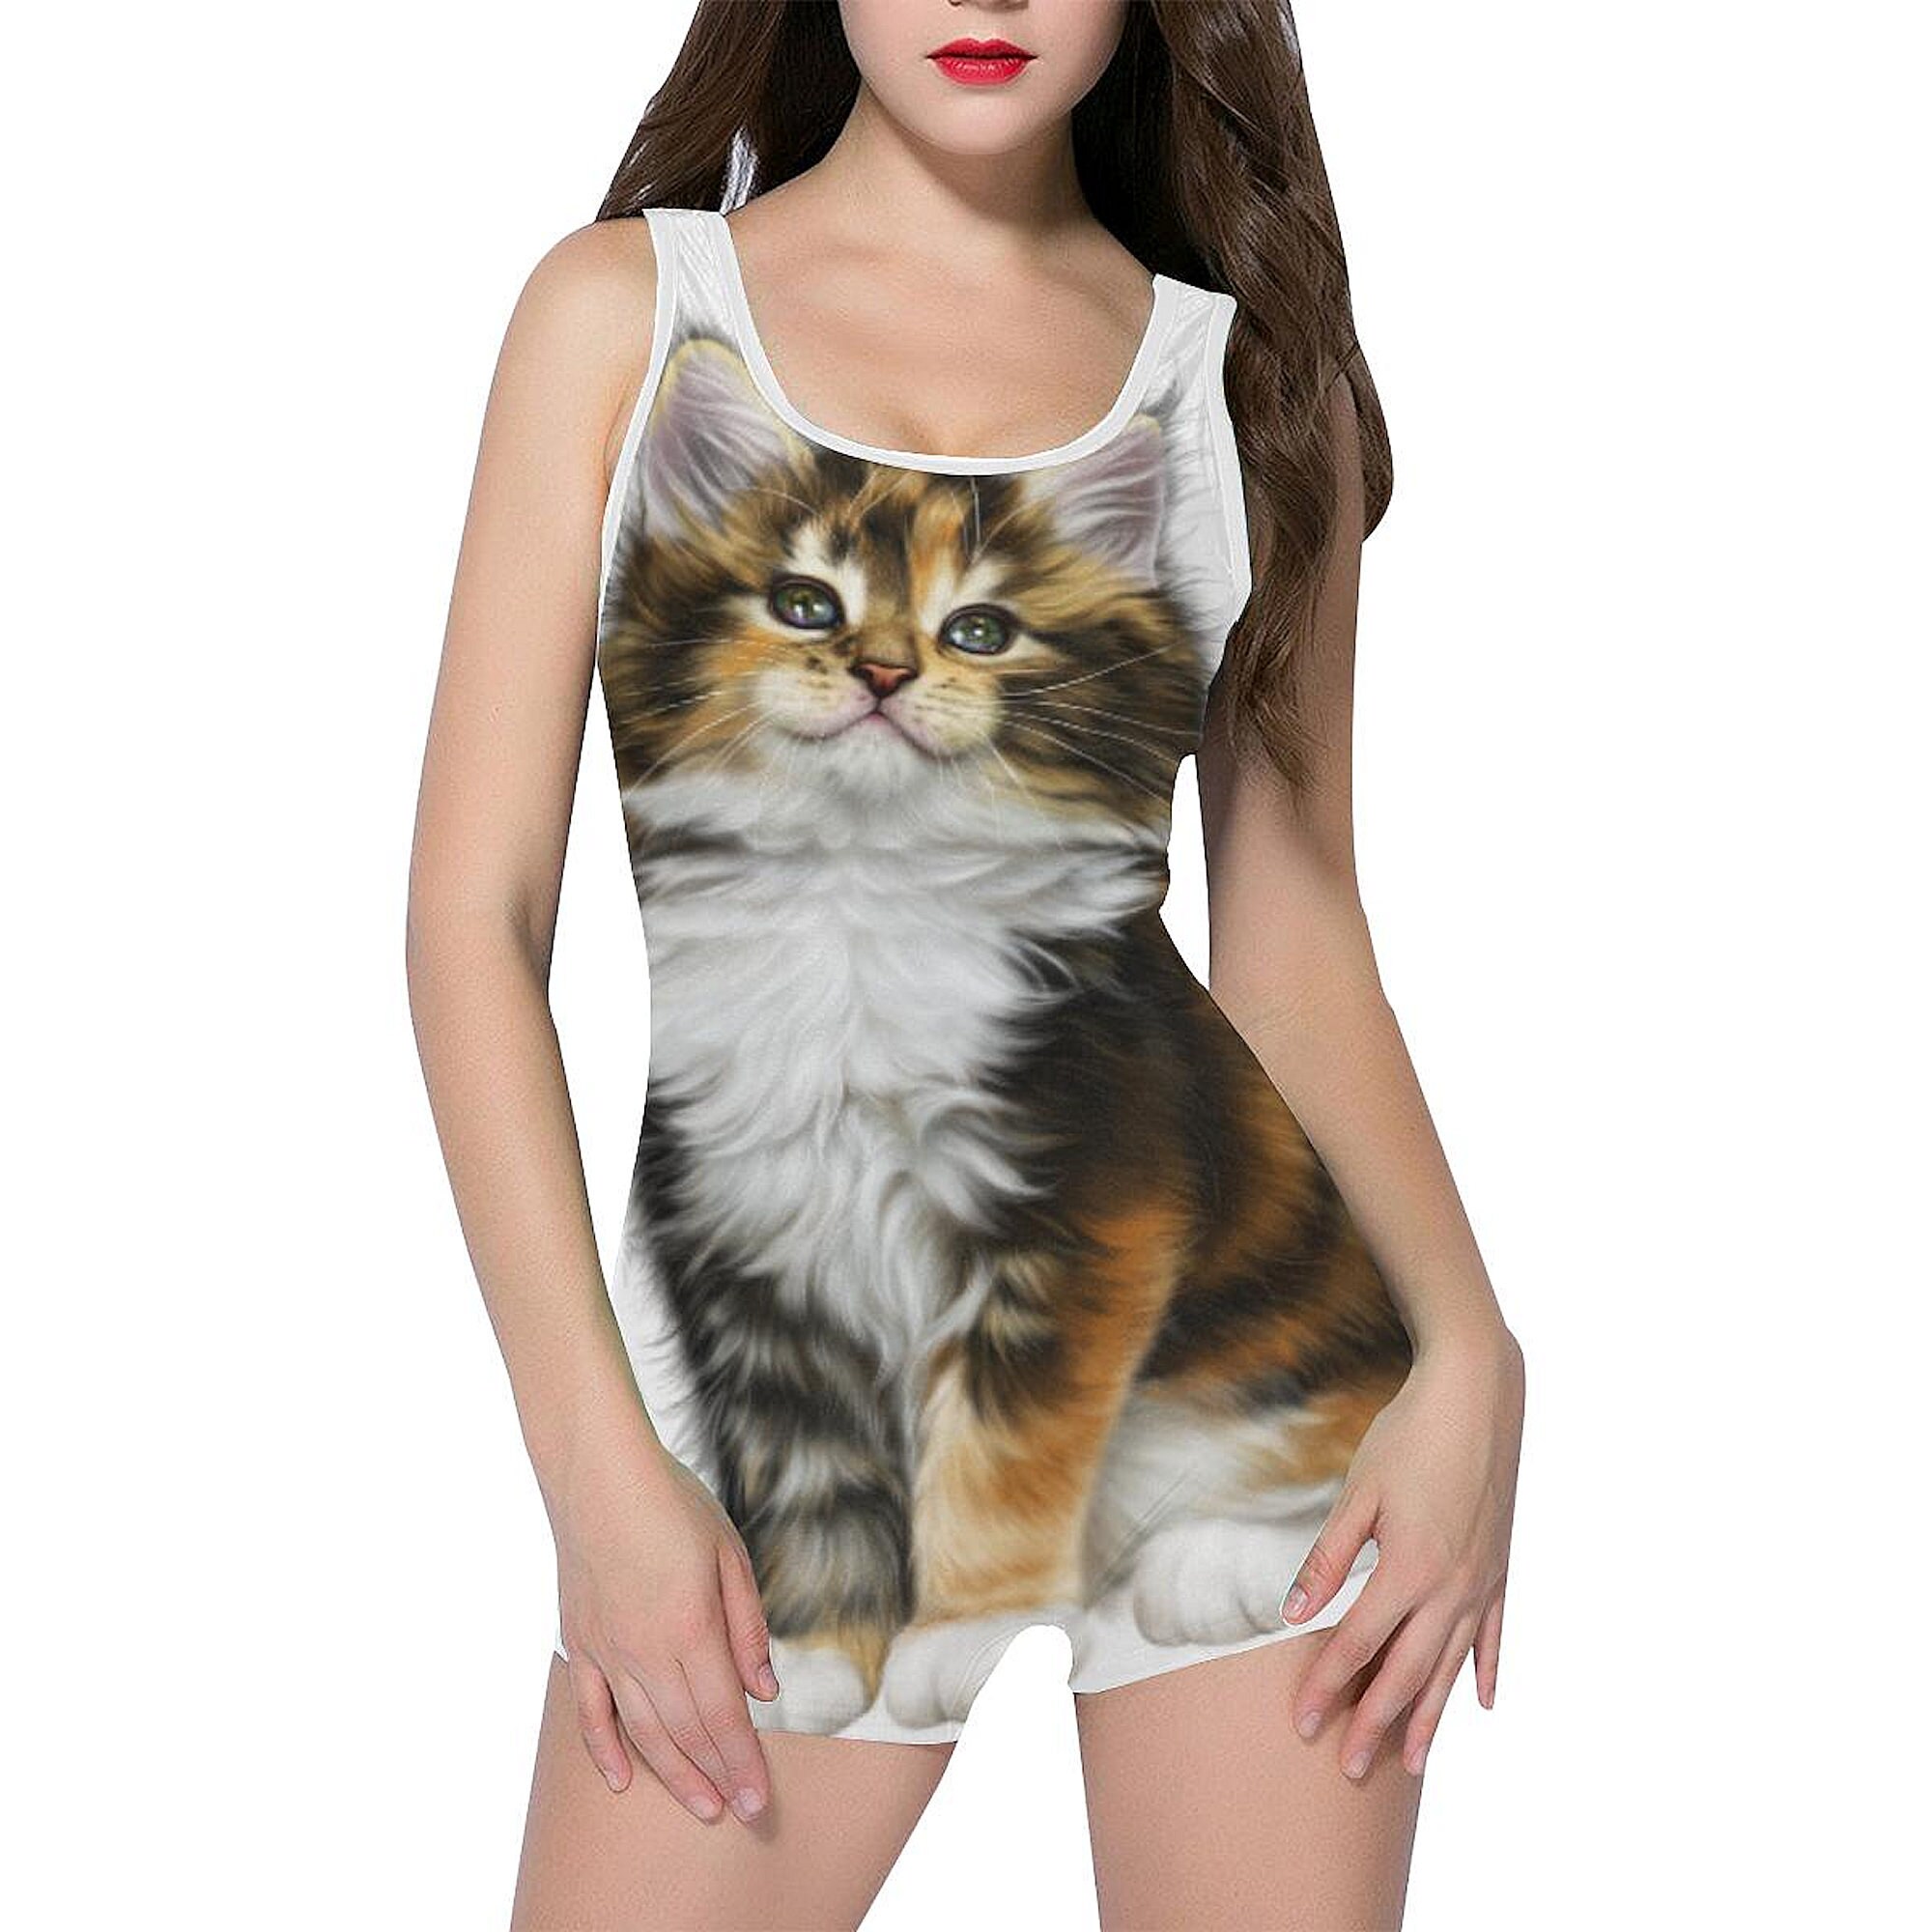 Cat Swimsuit Cat Bathing Suit Women's Designer Calico | Etsy